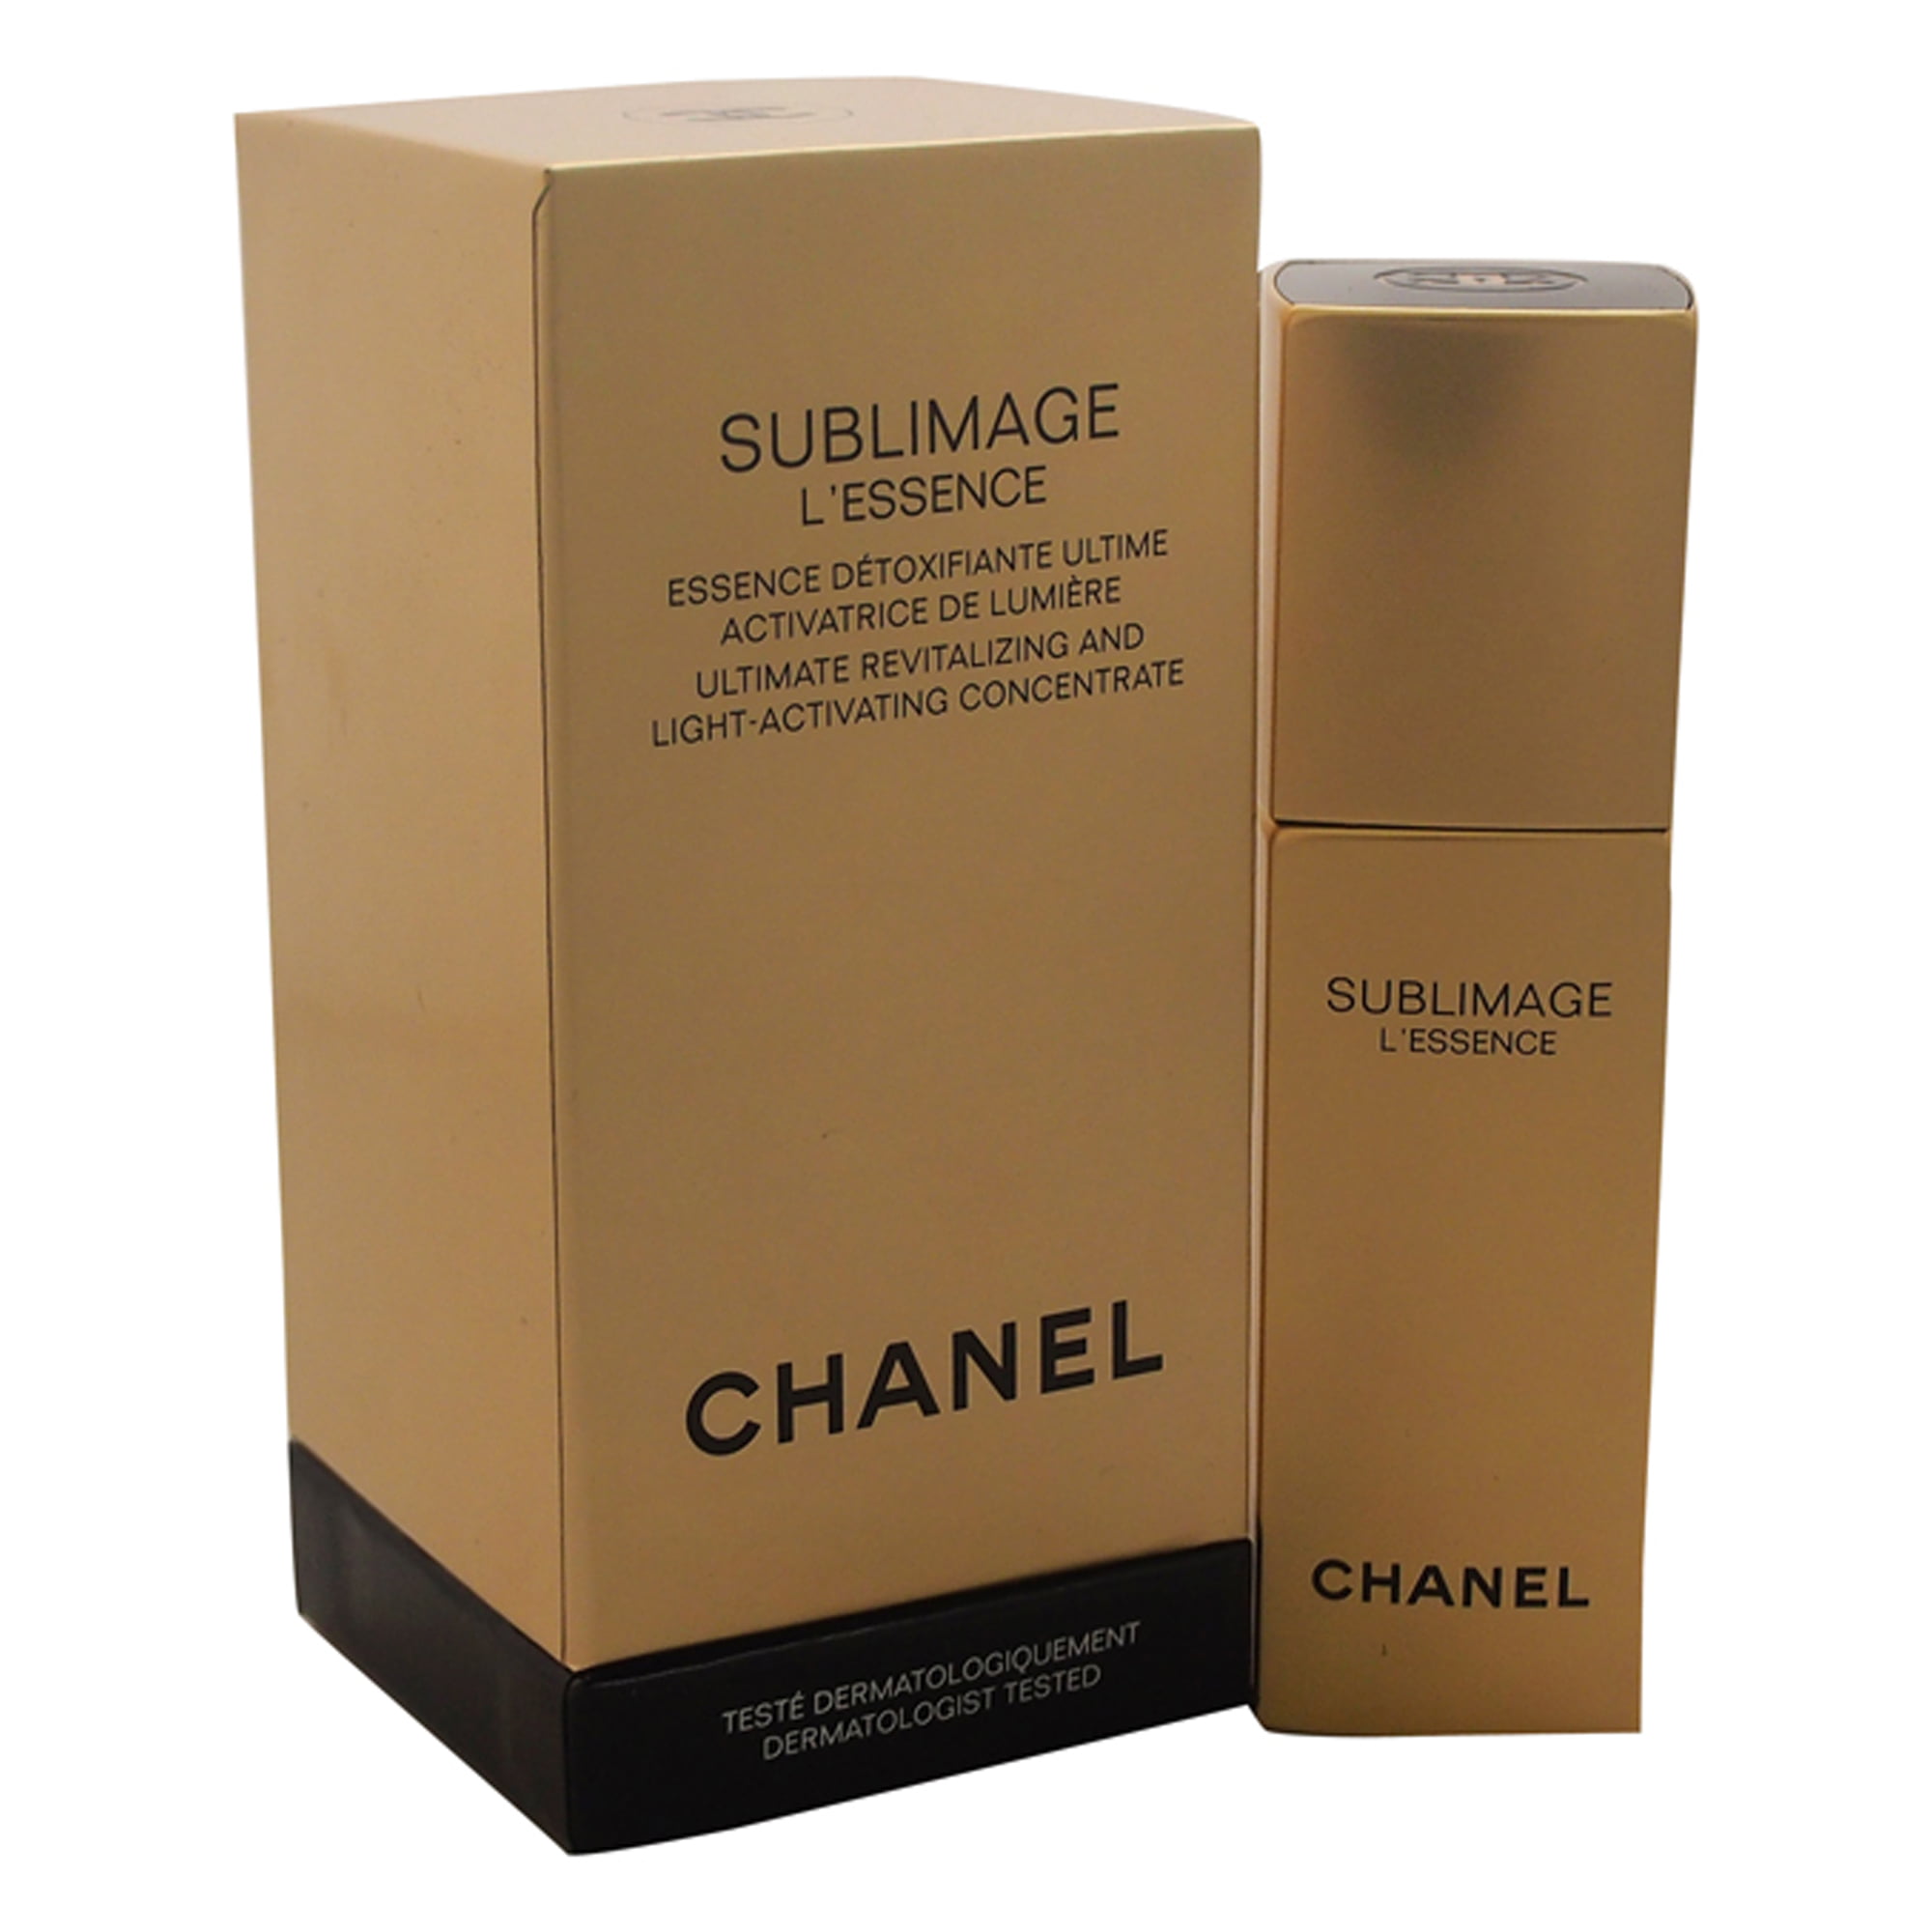 Chanel Review > Sublimage L'Essence Lumiere (Ultimate Light